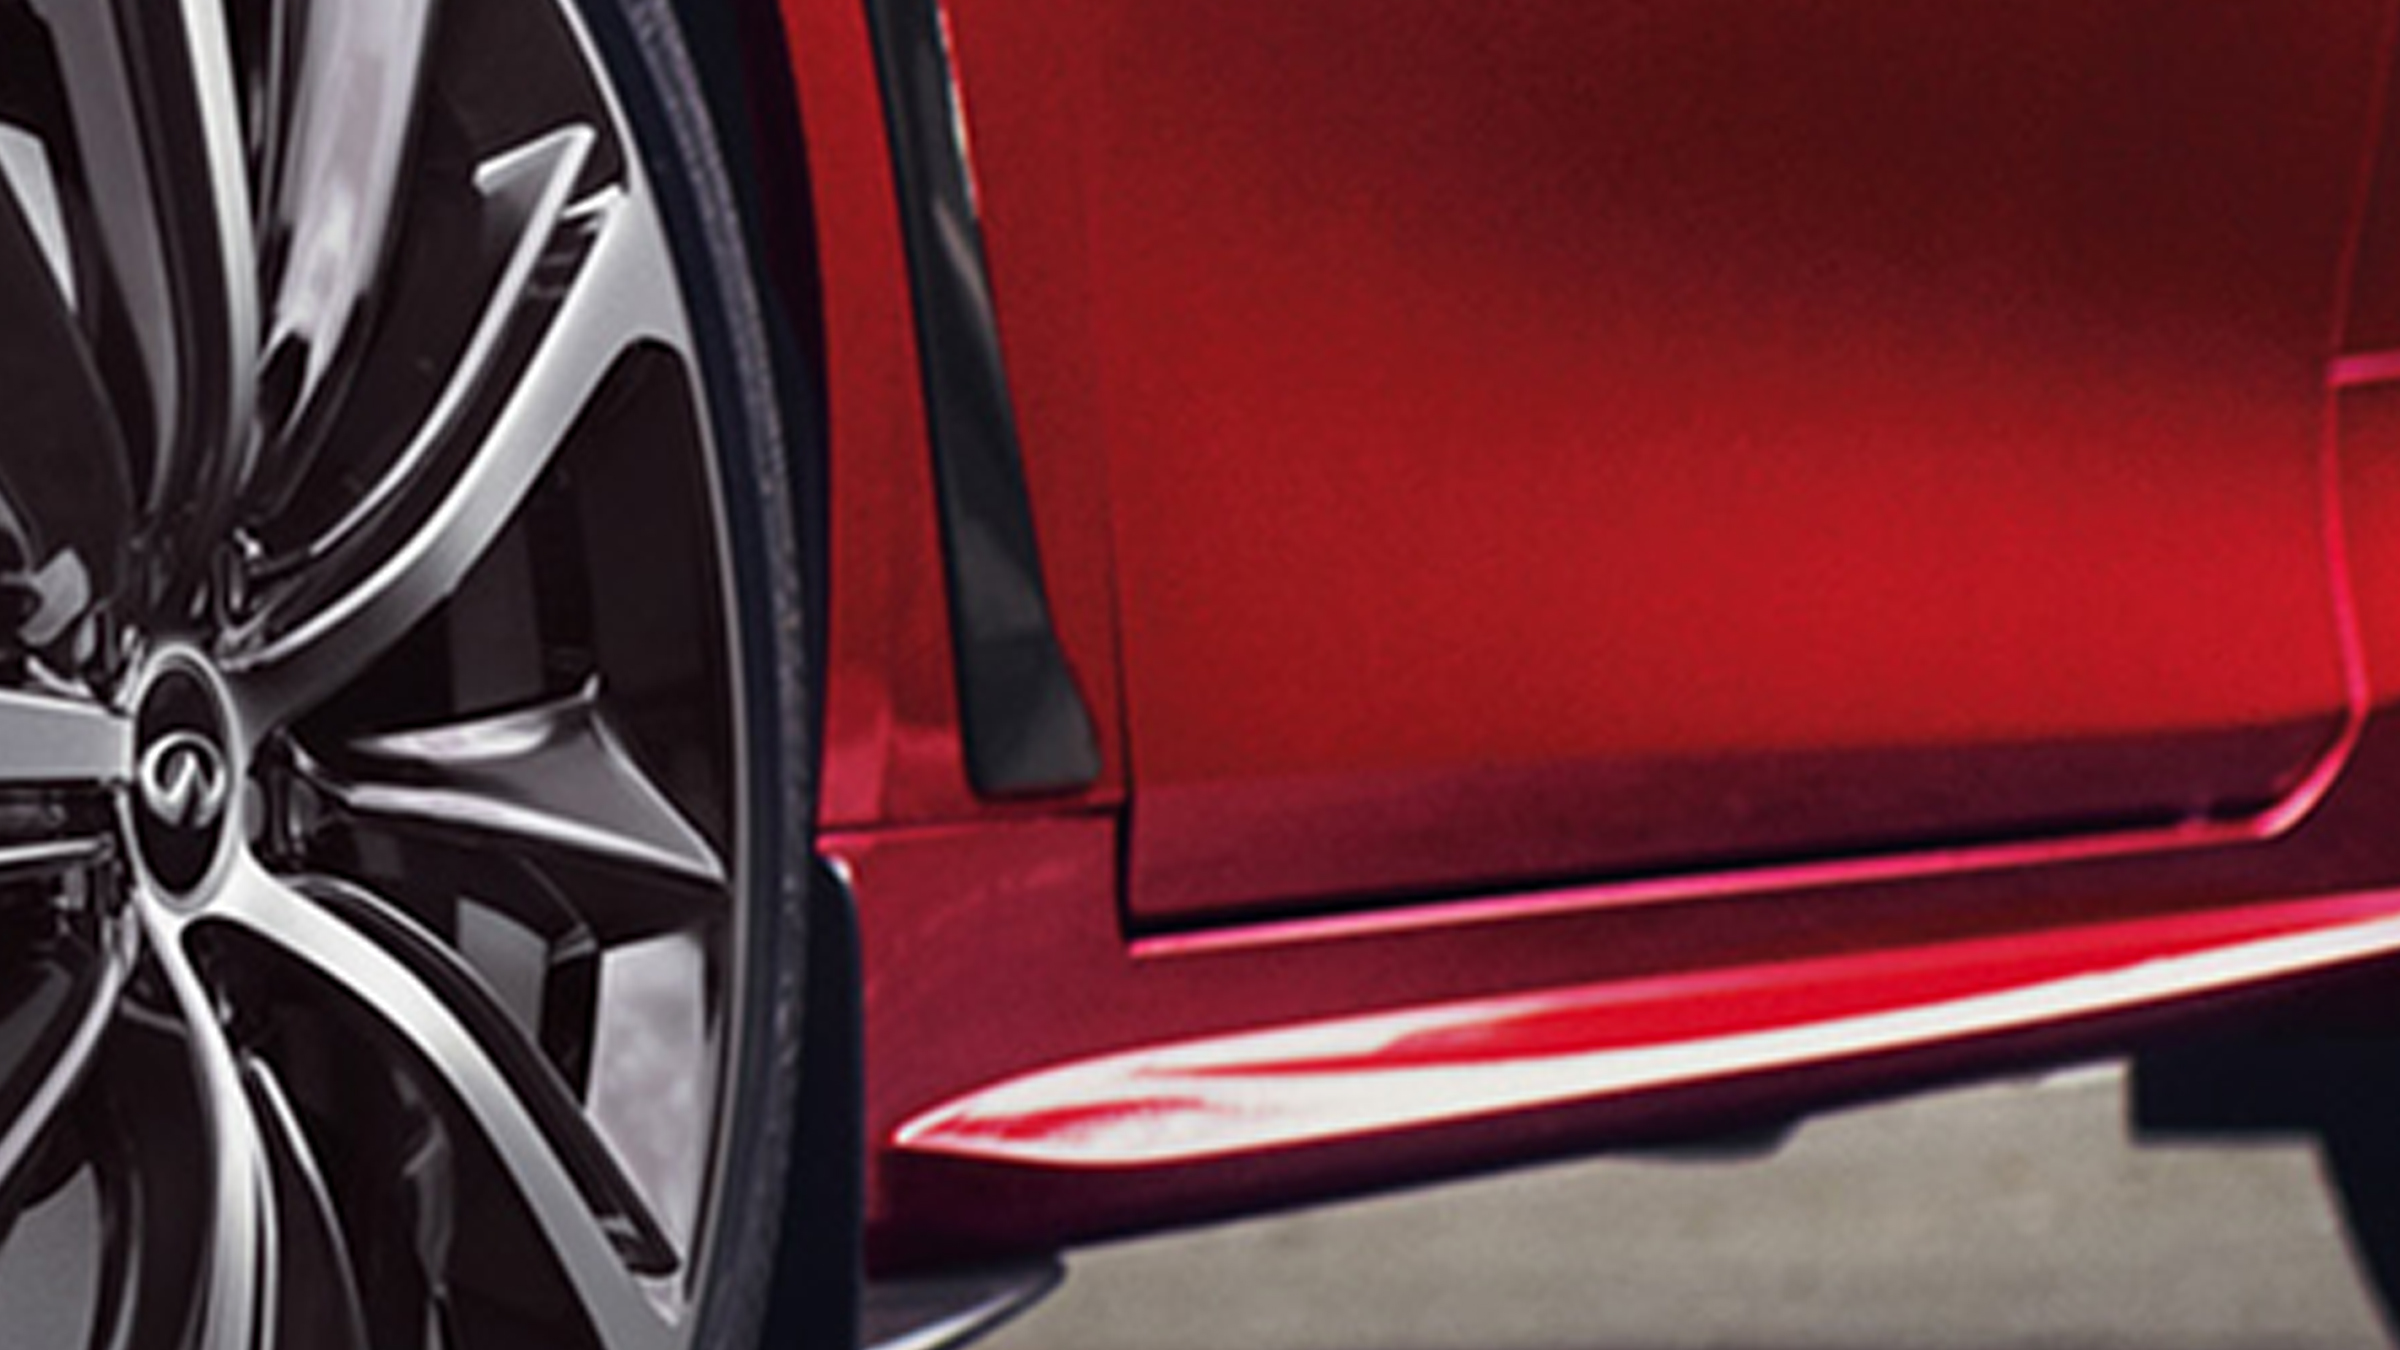 2022 INFINITI Q60 red car carbon fiber vents.